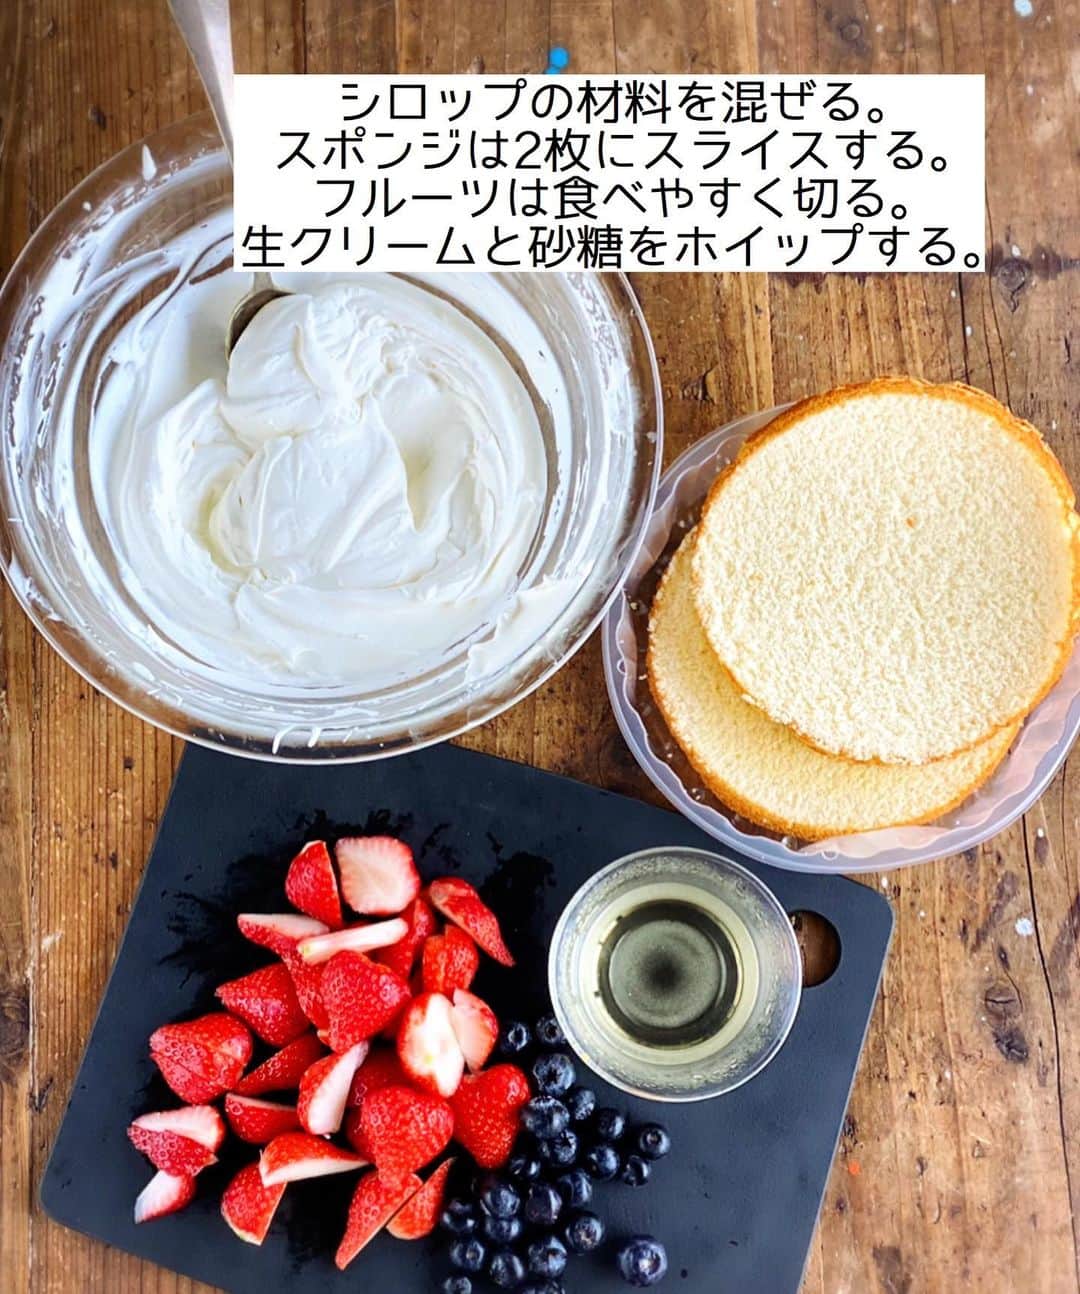 Mizuki【料理ブロガー・簡単レシピ】さんのインスタグラム写真 - (Mizuki【料理ブロガー・簡単レシピ】Instagram)「・﻿ 【#レシピ 】ーーーーーーーー﻿ ♡超簡単♡スコップケーキ♡﻿ ーーーーーーーーーーーーーー﻿ ﻿ ﻿ ﻿ おはようございます(*^^*)﻿ ﻿ 今日ご紹介させていただくのは﻿ クリスマスにもおすすめの﻿ \\ スコップケーキ //﻿ ﻿ 市販のスポンジケーキに﻿ クリームとフルーツを重ねるだけで﻿ 超簡単に作れますよ〜♡﻿ ﻿ クリームを綺麗に塗る必要もなく﻿ フルーツも適当に飾ればOK！！﻿ 容器の大きさなど記載していますが﻿ 難しく考えずにお試し下さいね(*^^*)﻿ (ブログでは2014年にご紹介しています✨)﻿ ﻿ ﻿ ﻿ ＿＿＿＿＿＿＿＿＿＿＿＿＿＿＿＿＿＿＿＿﻿ 【15×17×7cm容器一台分】﻿ 市販のスポンジケーキ(15cm)...1台﻿ 生クリーム...200ml﻿ 砂糖...大1.5﻿ ●熱湯...大2﻿ ●砂糖...大2﻿ ●(好みで)洋酒...小1﻿ 好みのフルーツ...適量﻿ (あれば)ミント・粉糖...各適量﻿ ﻿ 1.●を混ぜてシロップを作る。スポンジは2枚にスライスする。フルーツは食べやすく切る。ボウルに生クリームと砂糖を入れて泡立てる(7〜8分立て)。﻿ 2.容器にスポンジ1枚を適量にちぎって入れ→シロップの半量を塗る→生クリームの半量をのせる→フルーツの半量を散らす。これをもう一度繰り返す。﻿ 3.仕上げにミントを飾り、粉糖を振る。﻿ ￣￣￣￣￣￣￣￣￣￣￣￣￣￣￣￣￣￣￣￣﻿ ﻿ ﻿ ﻿ 《ポイント》﻿ ♦︎お子さんが召し上がる場合はシロップの材料をレンジで加熱し、アルコールを飛ばして下さい♩(洋酒はなくてもOK！)﻿ ♦︎フルーツは缶詰やバナナを使っても♩缶詰のフルーツは汁気をしっかり切って下さい☆﻿ ♦︎ざっくりスプーンですくってサーブします♩﻿ ﻿ ﻿ ﻿ ﻿ ﻿ ﻿ ﻿ ﻿ 📕新刊予約開始しました📕﻿ 【ラクしておいしい！#1品晩ごはん 】﻿ ￣￣￣￣￣￣￣￣￣￣￣￣￣￣￣￣￣﻿ 私たちだってヘトヘトな日がある•••﻿ 毎日何品も作っていられない•••﻿ もうごはんに悩みたくない😢﻿ そう思うことってありませんか？﻿ そんな時、1品ごはんはいかがでしょう？﻿ というご提案です✨﻿ ﻿ ﻿ 【1品ごはん】は﻿ 副菜いらずで全てがシンプル！﻿ ￣￣￣￣￣￣￣￣￣￣￣￣￣￣￣￣￣￣﻿ 一品つくるだけでいいから﻿ 献立を考えなくてよし！﻿ ￣￣￣￣￣￣￣￣￣￣￣￣￣￣￣￣￣￣﻿ 悩まない、疲れない、﻿ 気力や時間がなくてもなんとかなる！﻿ ￣￣￣￣￣￣￣￣￣￣￣￣￣￣￣￣￣￣﻿ そんな頼りになる﻿ 便利なお助けごはんです☺️💕﻿ (ハイライトに🔗貼っています✨)﻿ ￣￣￣￣￣￣￣￣￣￣￣￣￣￣￣￣￣﻿ ﻿ ﻿ ﻿ ﻿ ﻿ ⭐️発売中⭐️﻿ ＿＿＿＿＿＿＿＿＿＿＿＿＿＿＿＿＿＿﻿ しんどくない献立、考えました♩﻿ \15分でいただきます/﻿ 📕#Mizukiの2品献立 📕﻿ ﻿ 和食をもっとカジュアルに♩﻿ \毎日のごはんがラクになる/﻿ 📘#Mizukiの今どき和食 📘﻿ ﻿ ホケミレシピの決定版♩﻿ \はじめてでも失敗しない/﻿ 📙ホットケーキミックスのお菓子 📙﻿ ﻿ NHKまる得マガジンテキスト☆﻿ ホットケーキミックスで﻿ 📗絶品おやつ&意外なランチ📗﻿ ￣￣￣￣￣￣￣￣￣￣￣￣￣￣￣￣￣￣﻿ ﻿ ﻿ ﻿ ＿＿＿＿＿＿＿＿＿＿＿＿＿＿＿＿＿＿﻿ レシピを作って下さった際や﻿ レシピ本についてのご投稿には﻿ タグ付け( @mizuki_31cafe )して﻿ お知らせいただけると嬉しいです😊💕﻿ ￣￣￣￣￣￣￣￣￣￣￣￣￣￣￣￣￣￣﻿ ﻿ ﻿ ﻿ ﻿ #スコップケーキ#ケーキ#クリスマス#クリスマスケーキ#Mizuki#簡単レシピ#時短レシピ#節約レシピ#料理#フーディーテーブル#マカロニメイト#おうちごはん#デリスタグラマー#料理好きな人と繋がりたい#食べ物#料理記録#おうちごはんlover#写真好きな人と繋がりたい#foodpic#cooking#recipe#lin_stagrammer#foodporn#yummy#f52grams#スコップケーキm」12月20日 8時44分 - mizuki_31cafe